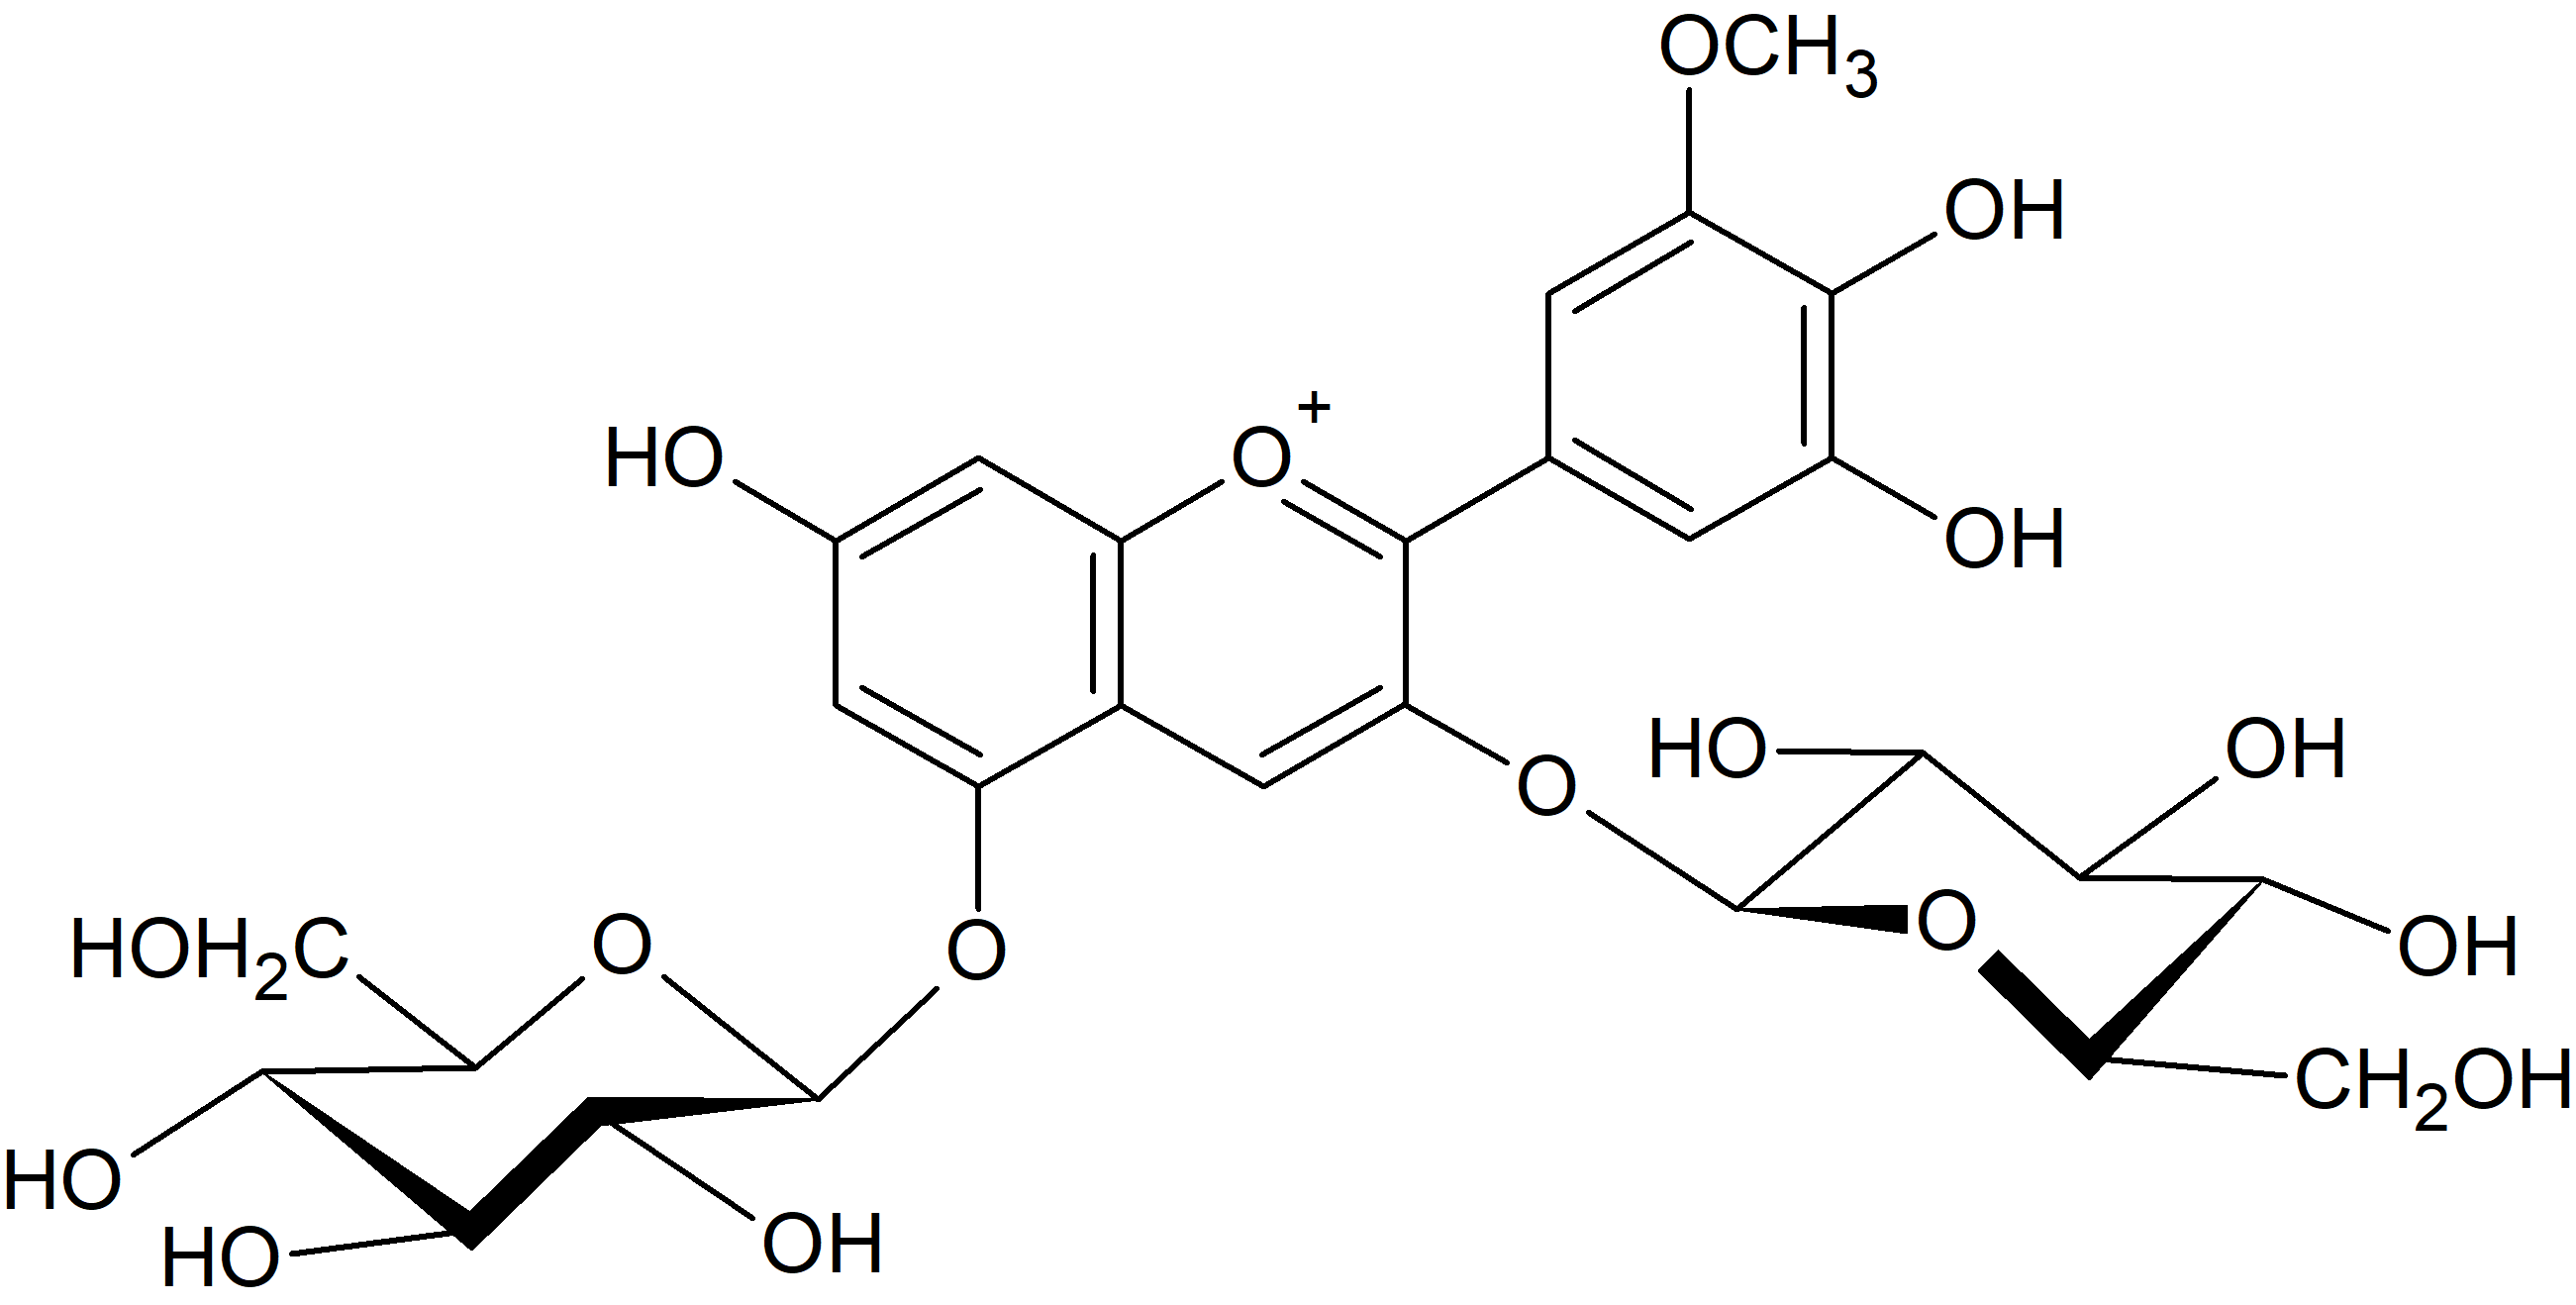 Petunidin 3,5-di-O-glucoside